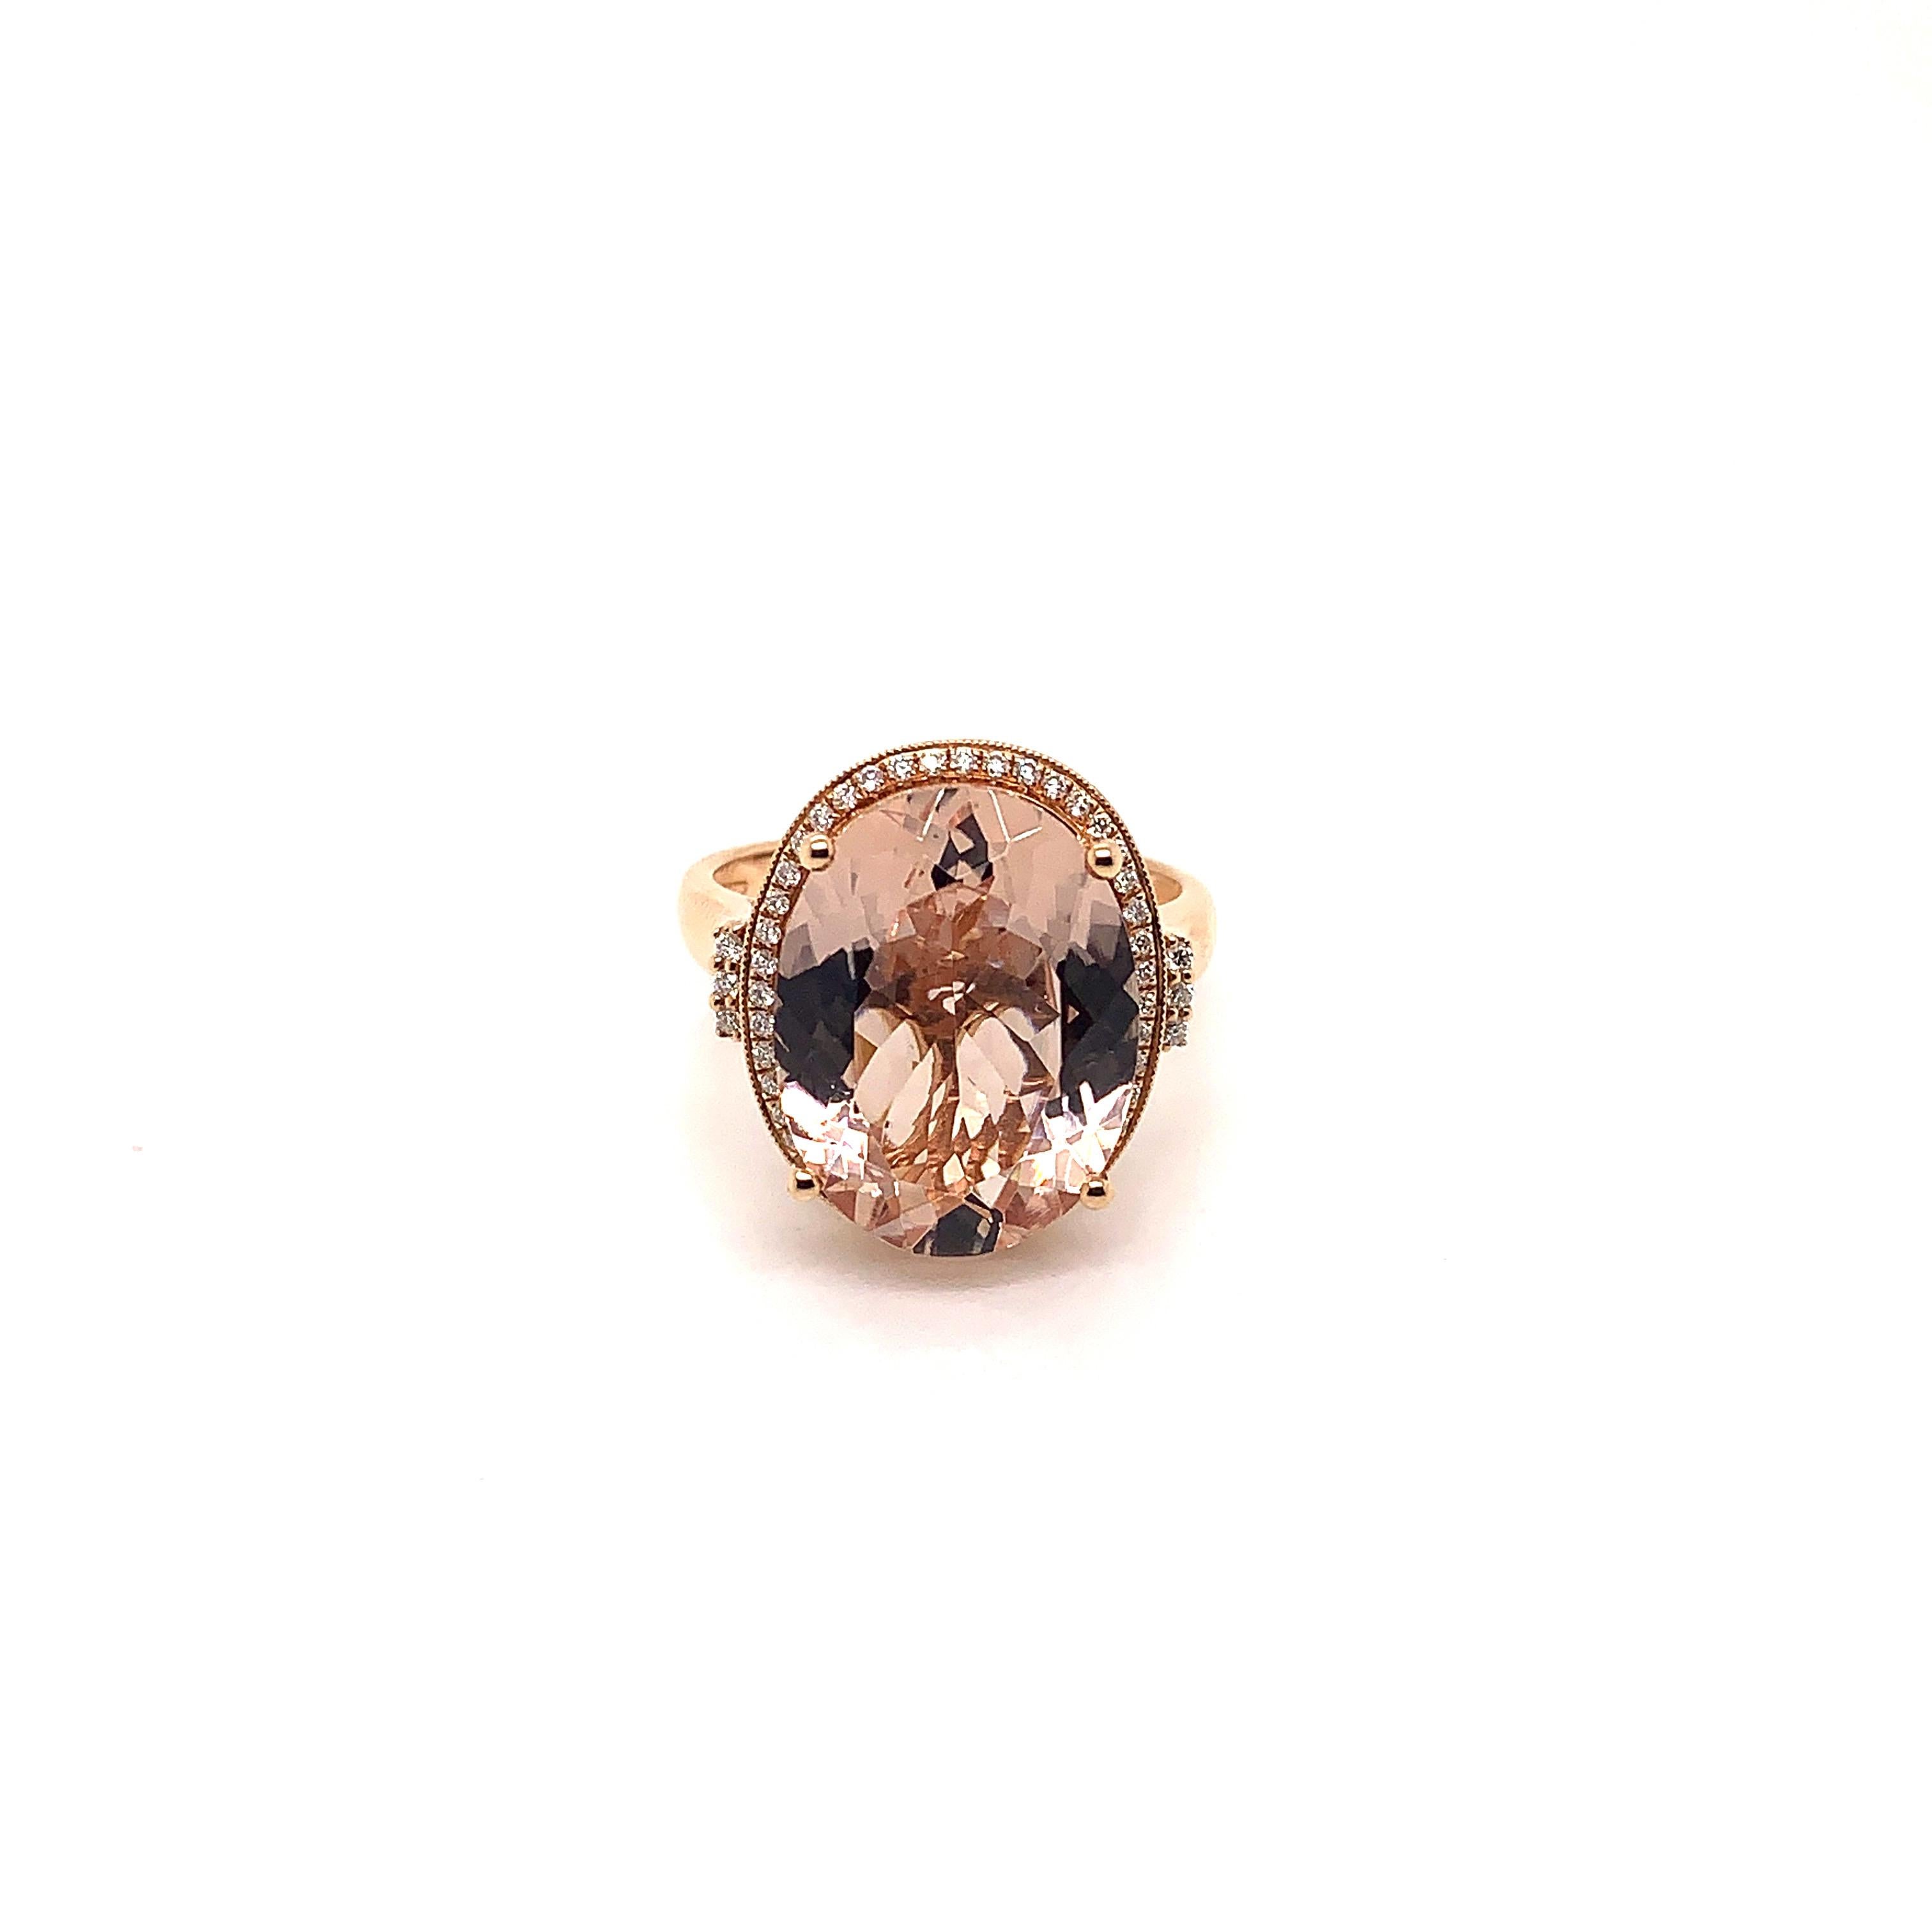 Klassischer Morganit-Ring aus 18 Karat Roségold mit Diamanten. 

Morganit: 7,77 Karat in ovaler Form.
Diamanten: 0.177 Karat, Farbe G, Reinheit VS. 
Gold: 4,661 g, 18 Karat Roségold. 